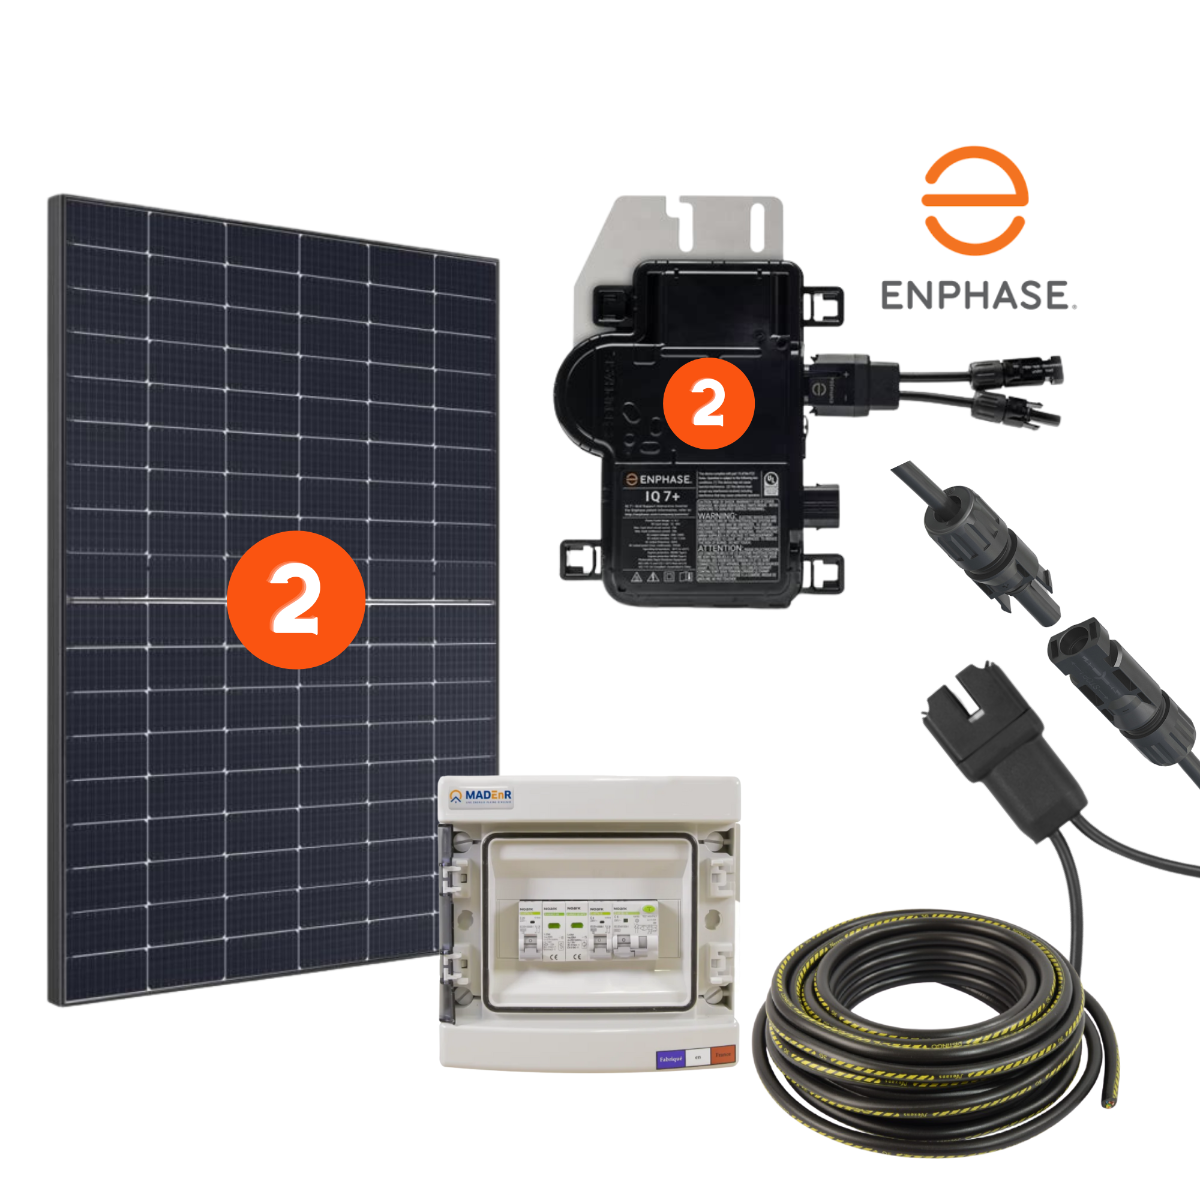 Importance du panneau solaire dans un kit solaire photovoltaïque 9KW